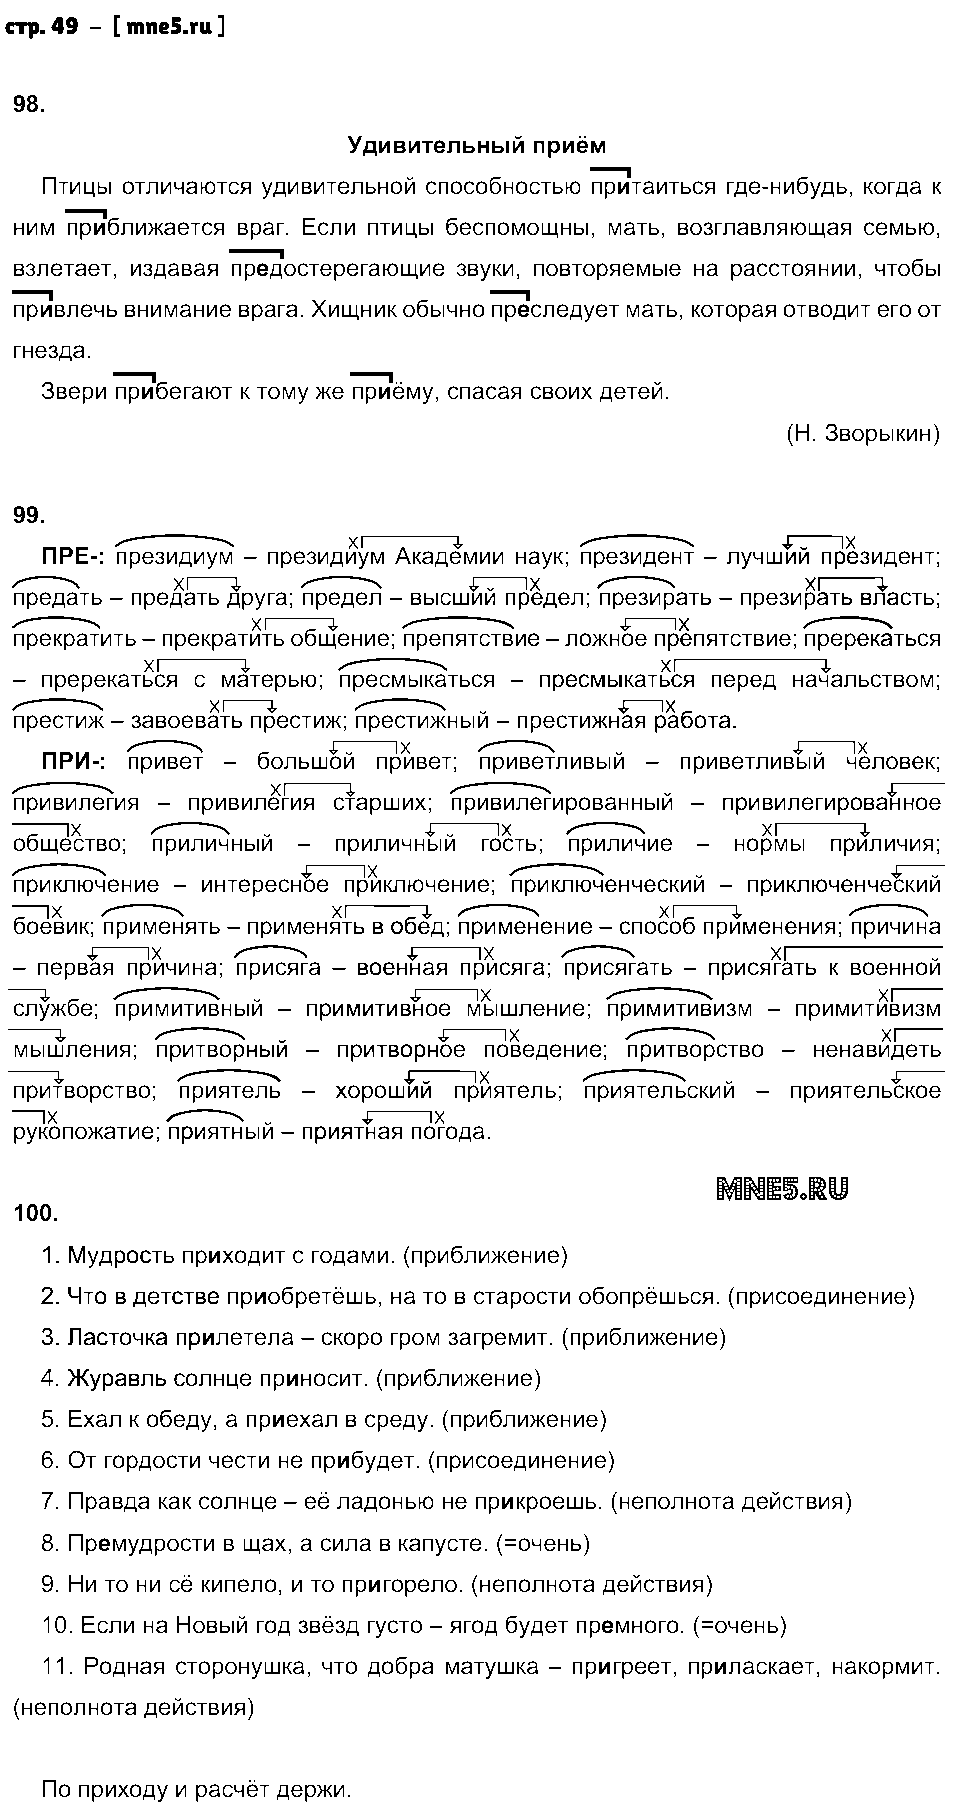 ГДЗ Русский язык 6 класс - стр. 49